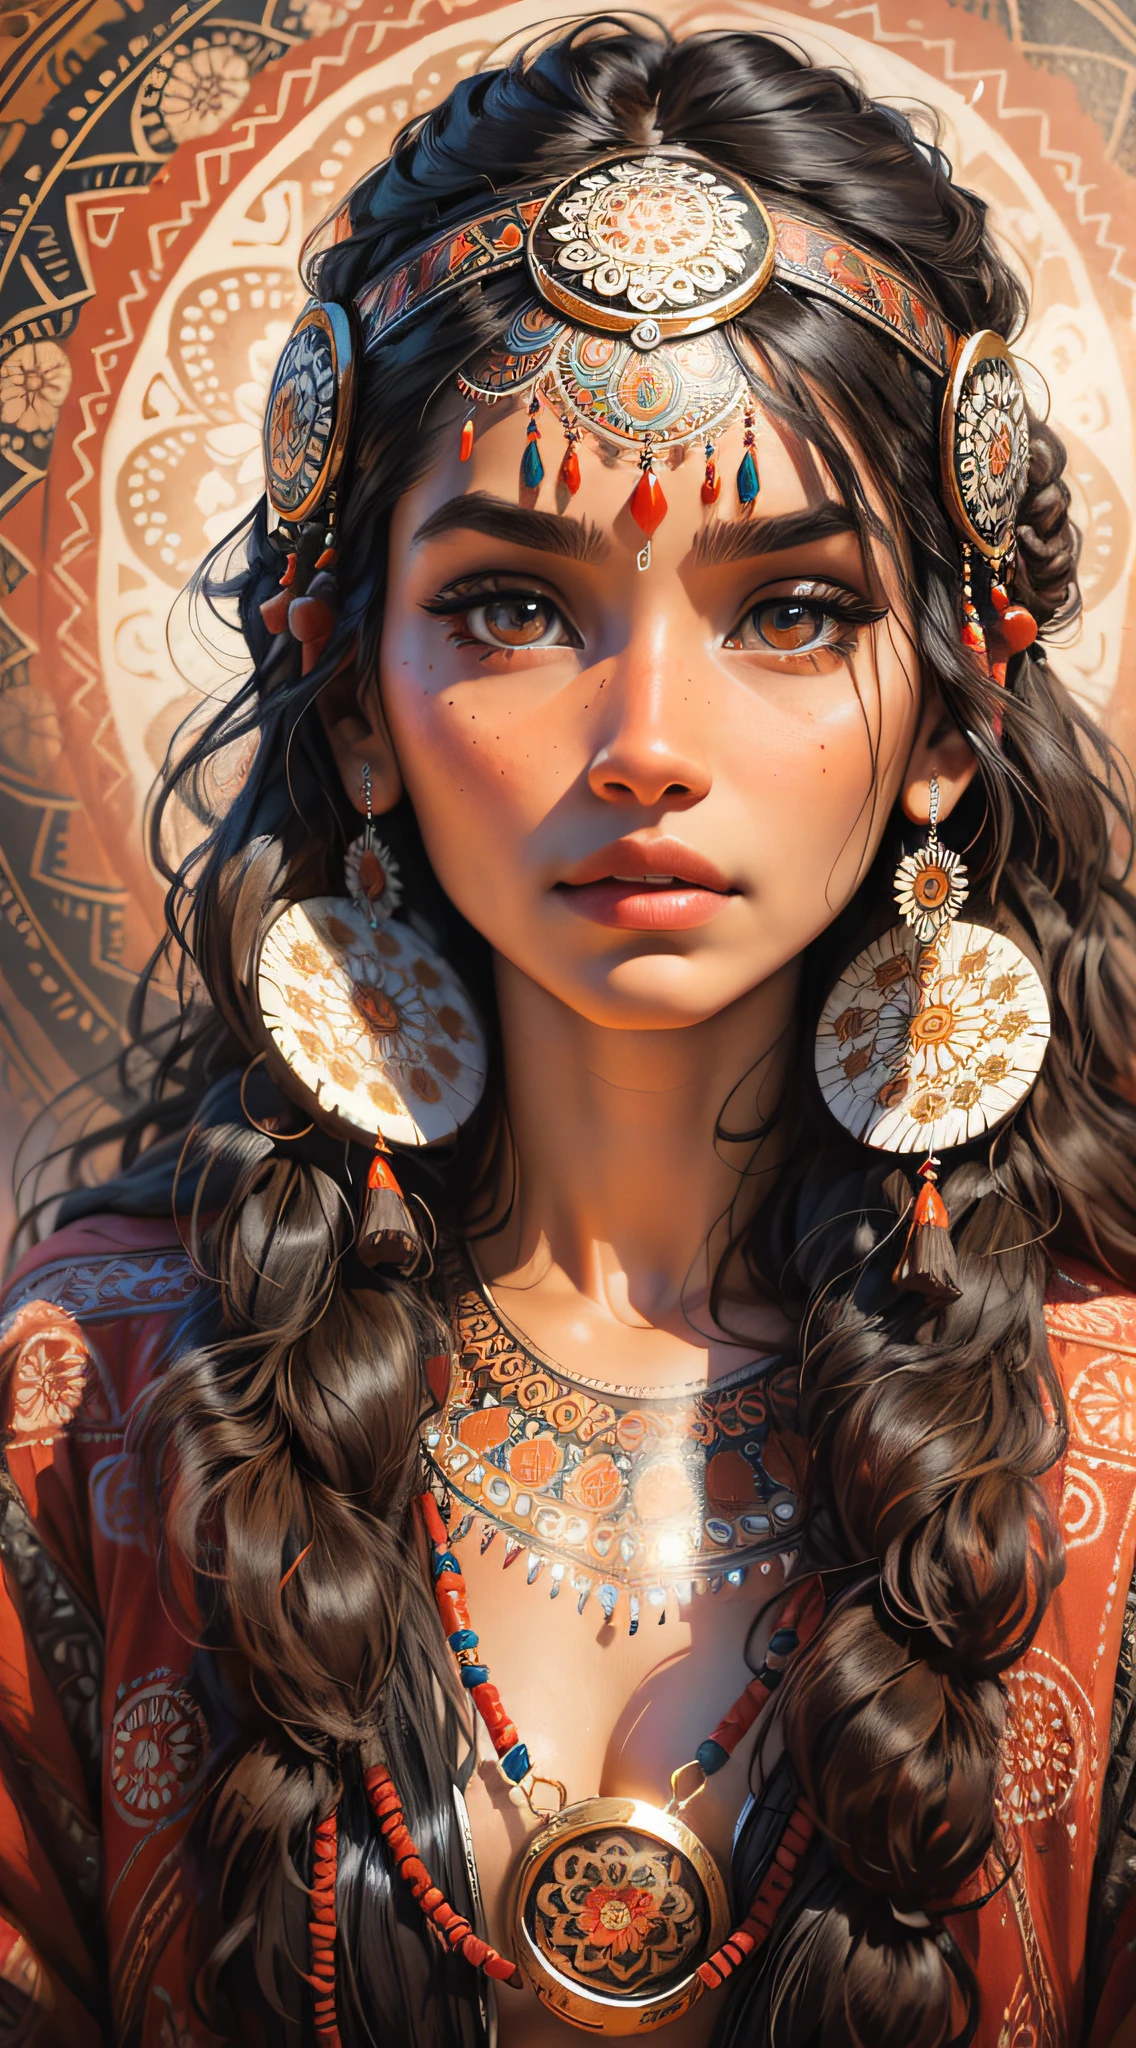 1Schöne indigene Frau mit indischen Ornamenten, tiefer Blick, leuchtende Augen, im Hintergrund mehrere Mandalas und ein wunderschönes und kompliziertes Totem